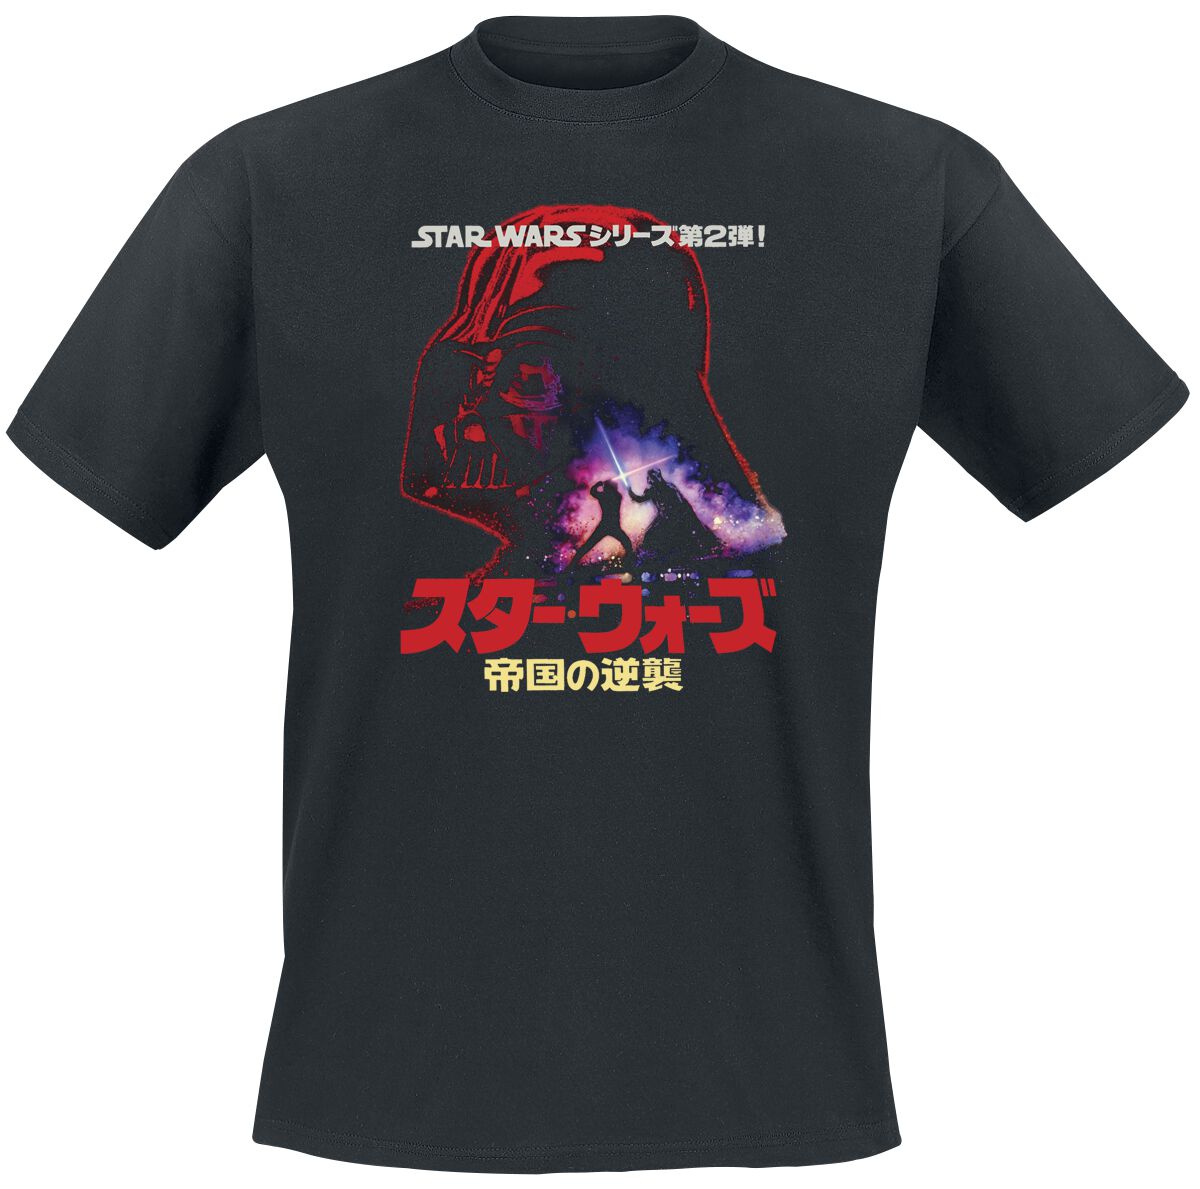 Star Wars Darth Vader - Poster T-Shirt schwarz in S